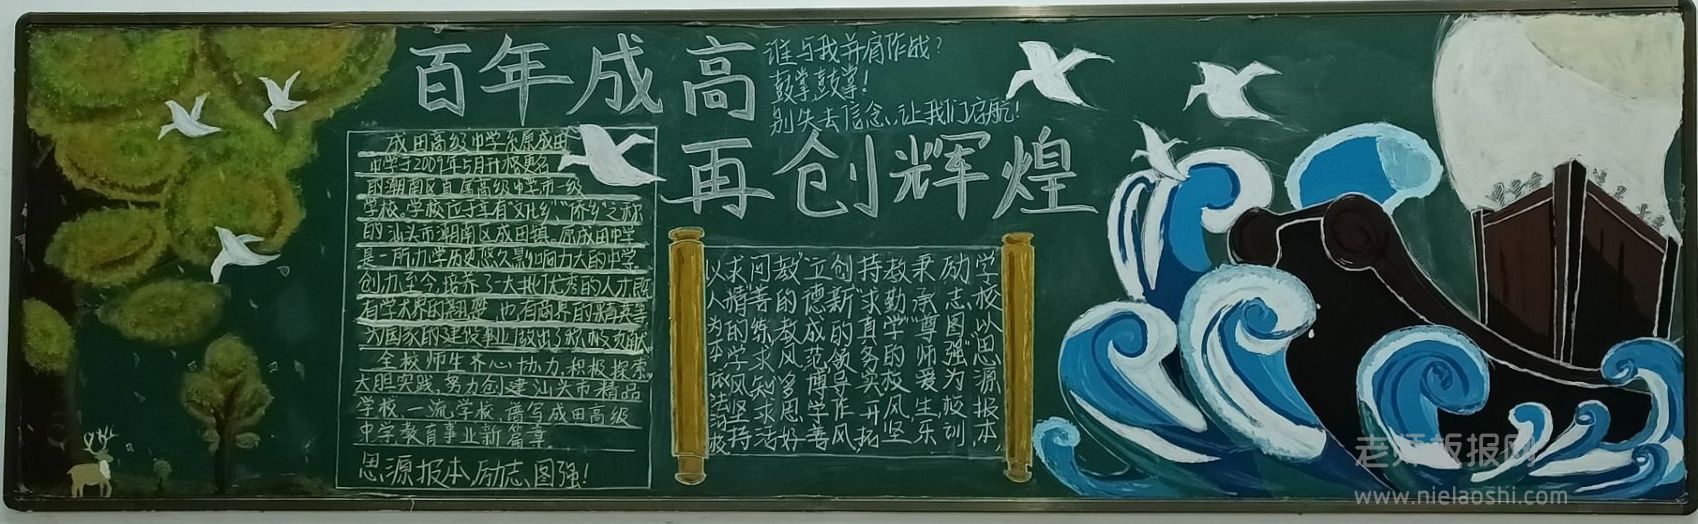 成田中学黑板报图片 百年成高再创辉煌